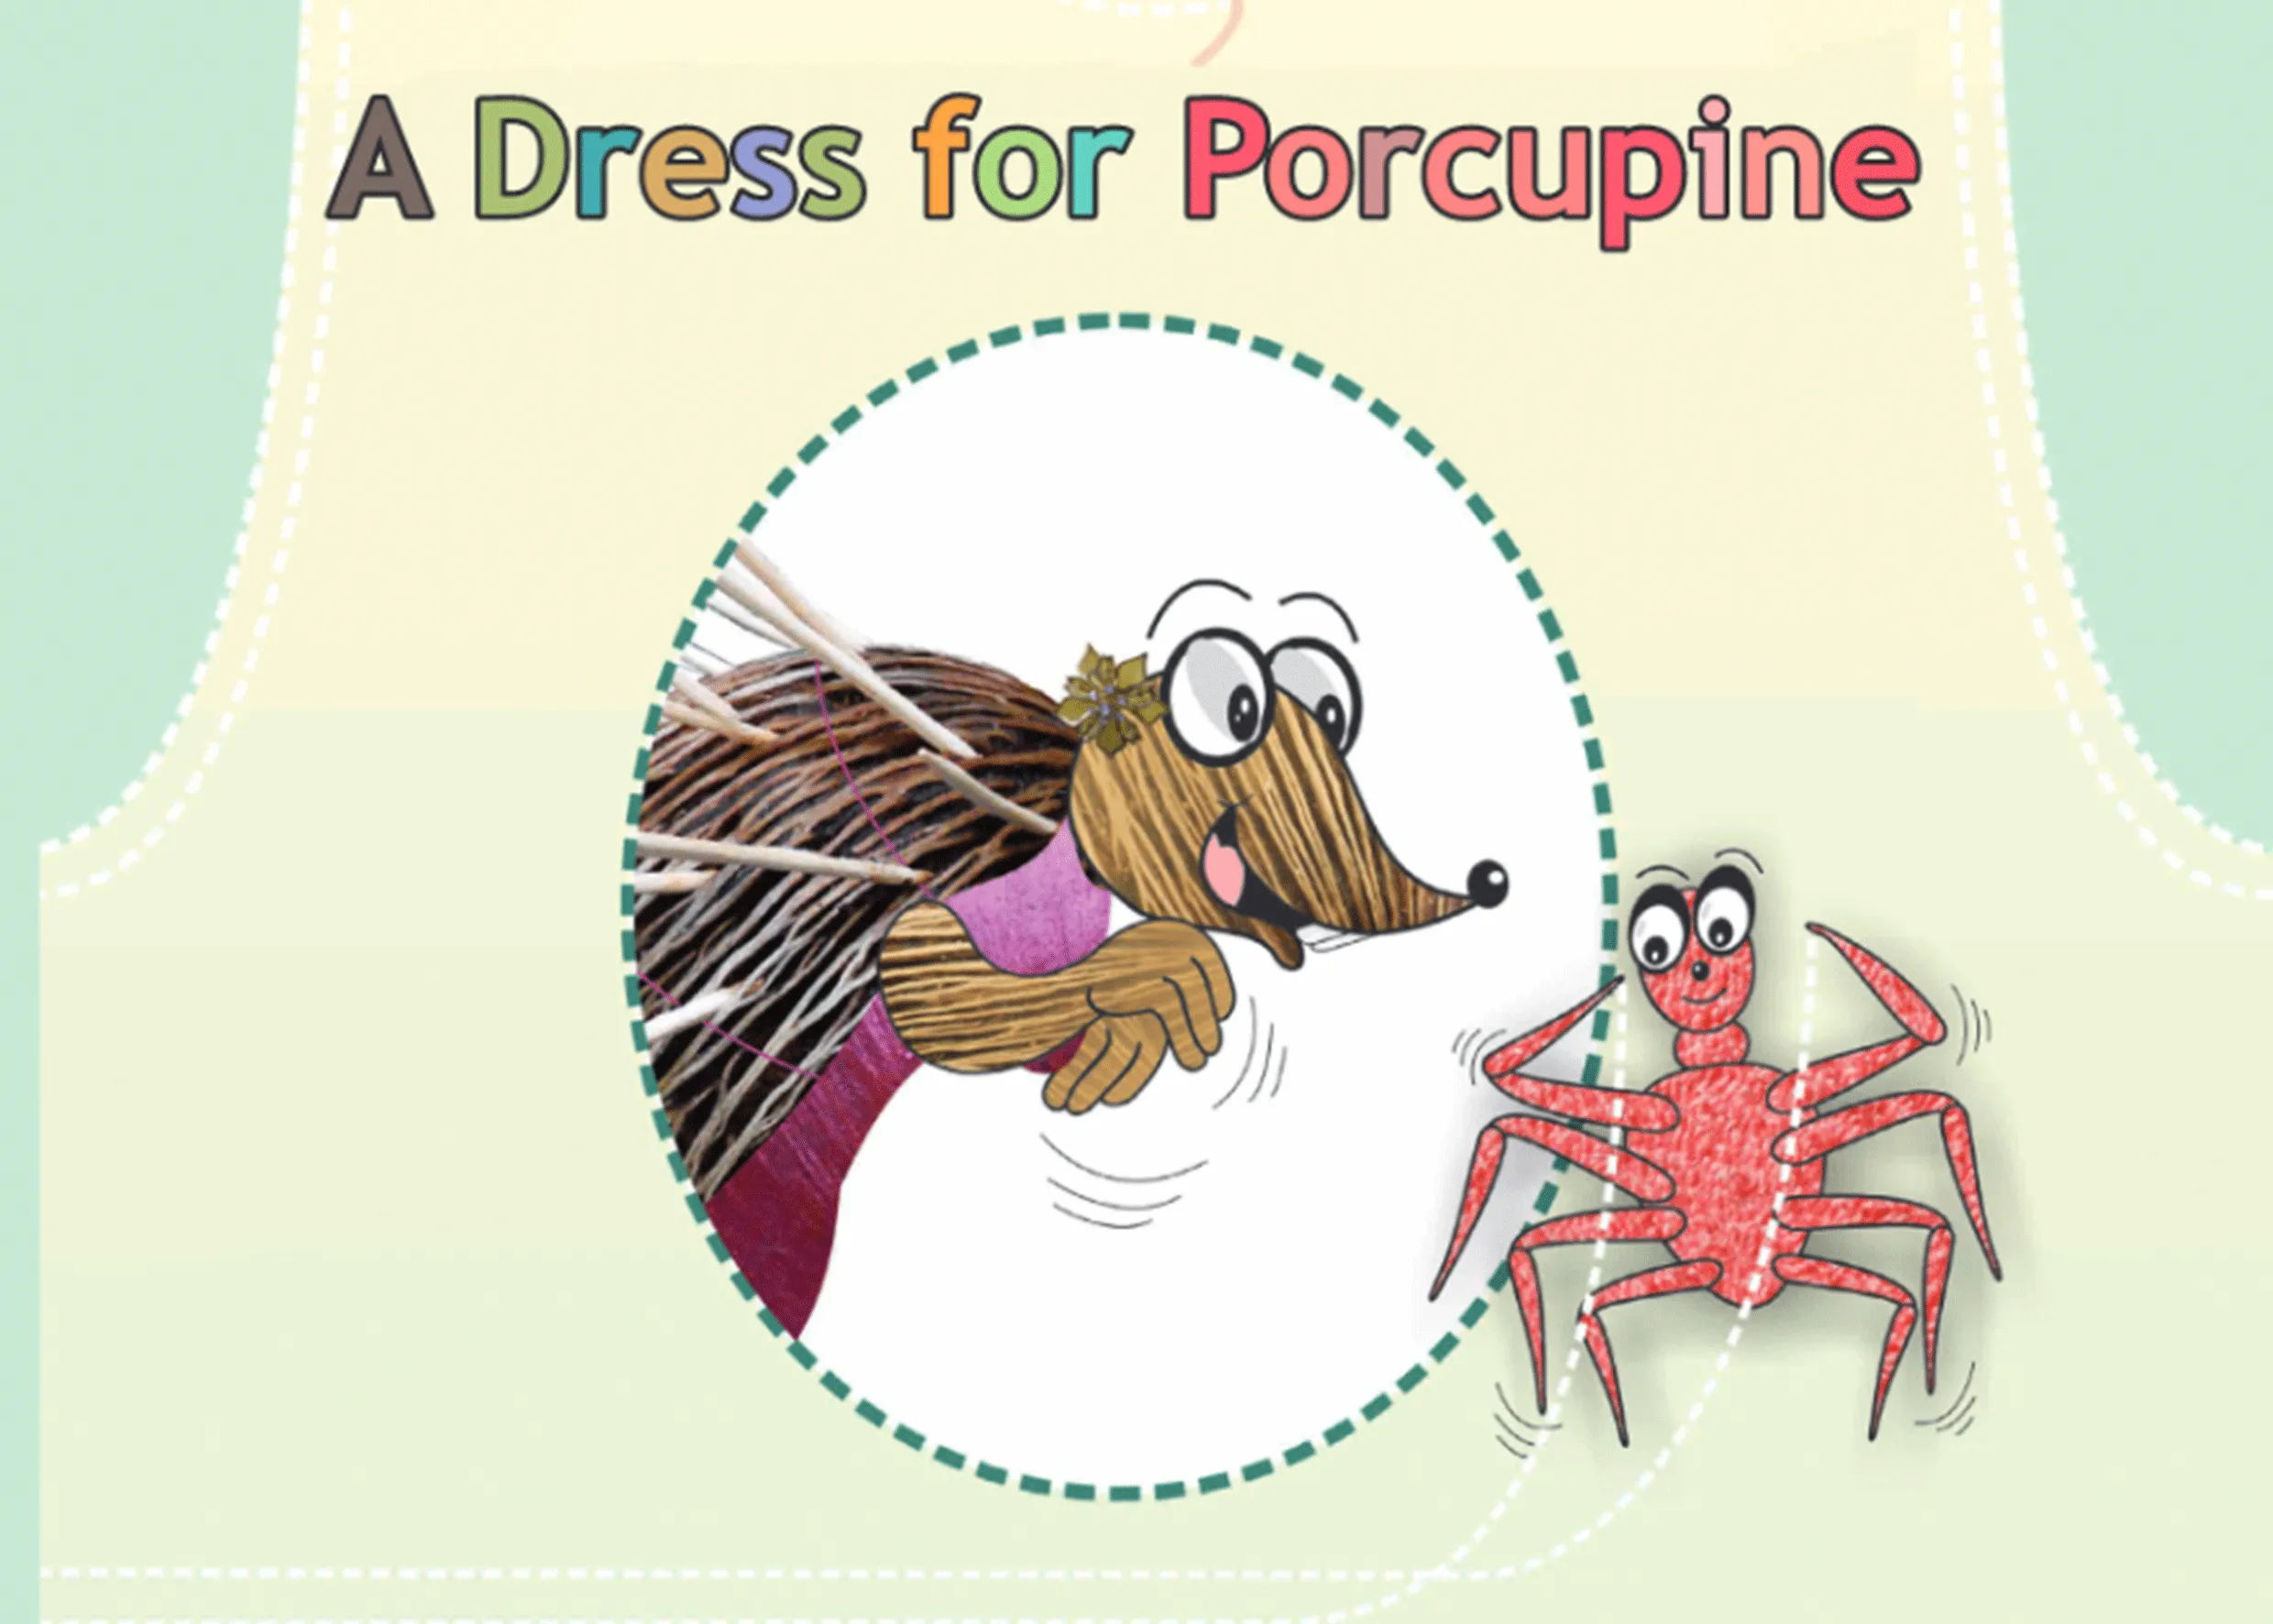 A Dress for Porcupine